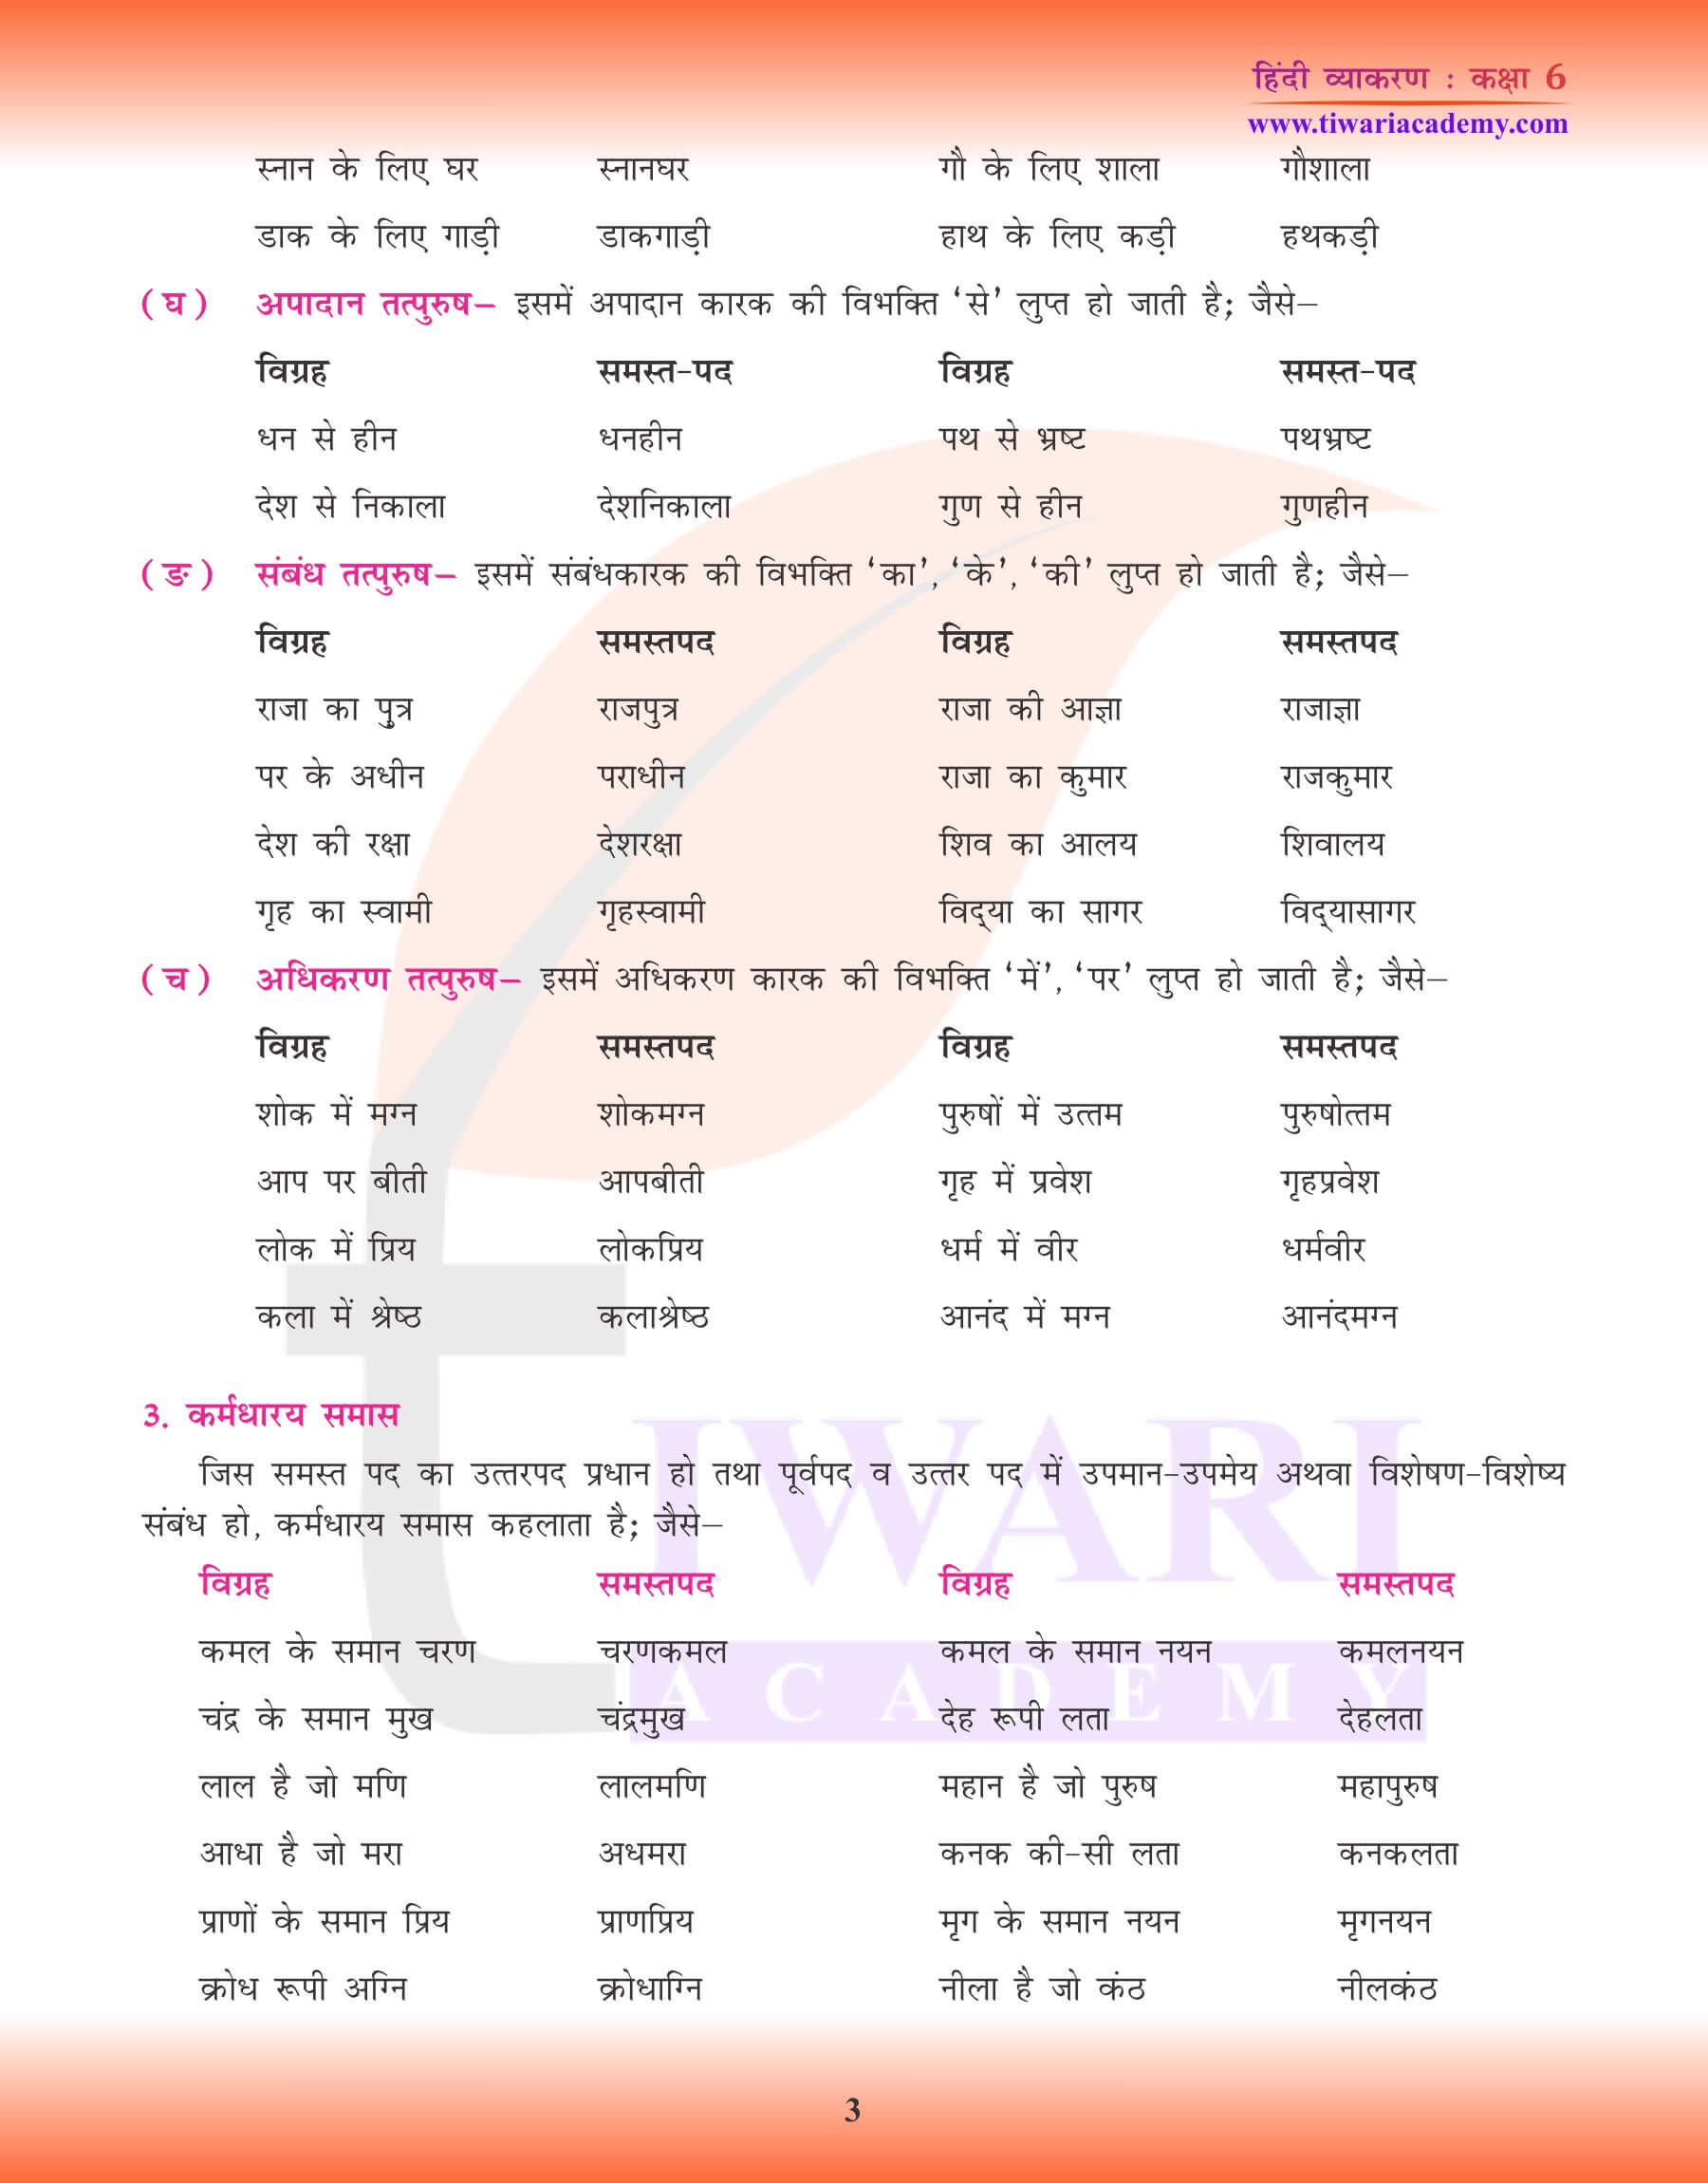 कक्षा 6 हिंदी व्याकरण में समास का अध्ययन